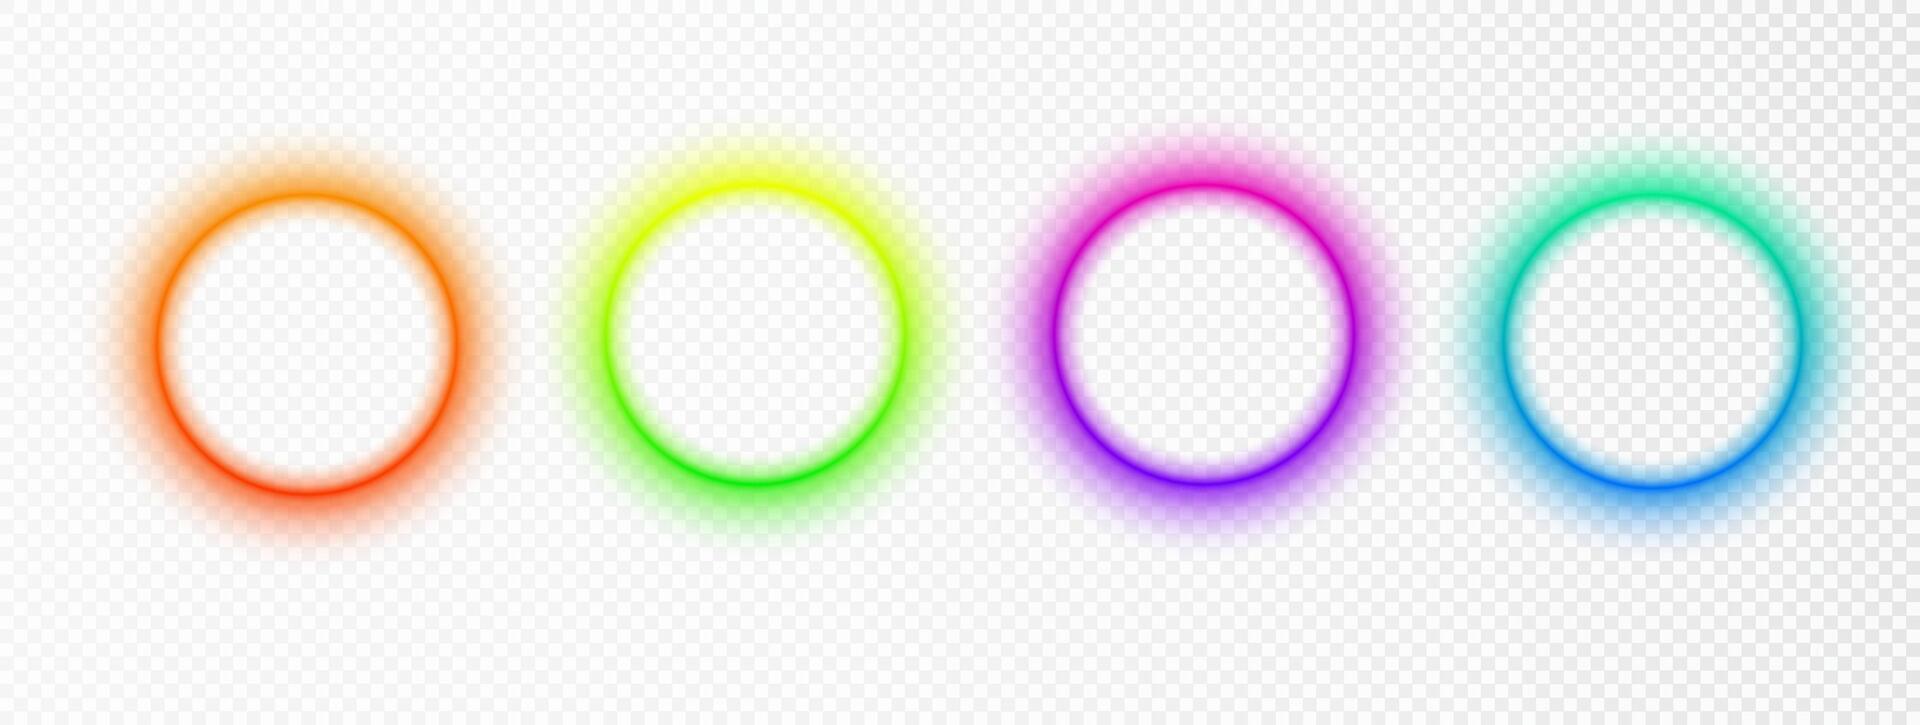 beschwingt Farbe Kreis Rand isoliert auf Weiß. abstrakt Farbe Gradient Kreis Hintergründe. irisierend runden Rahmen mit Kopieren Raum. Sanft Neon- Licht Formen. vektor